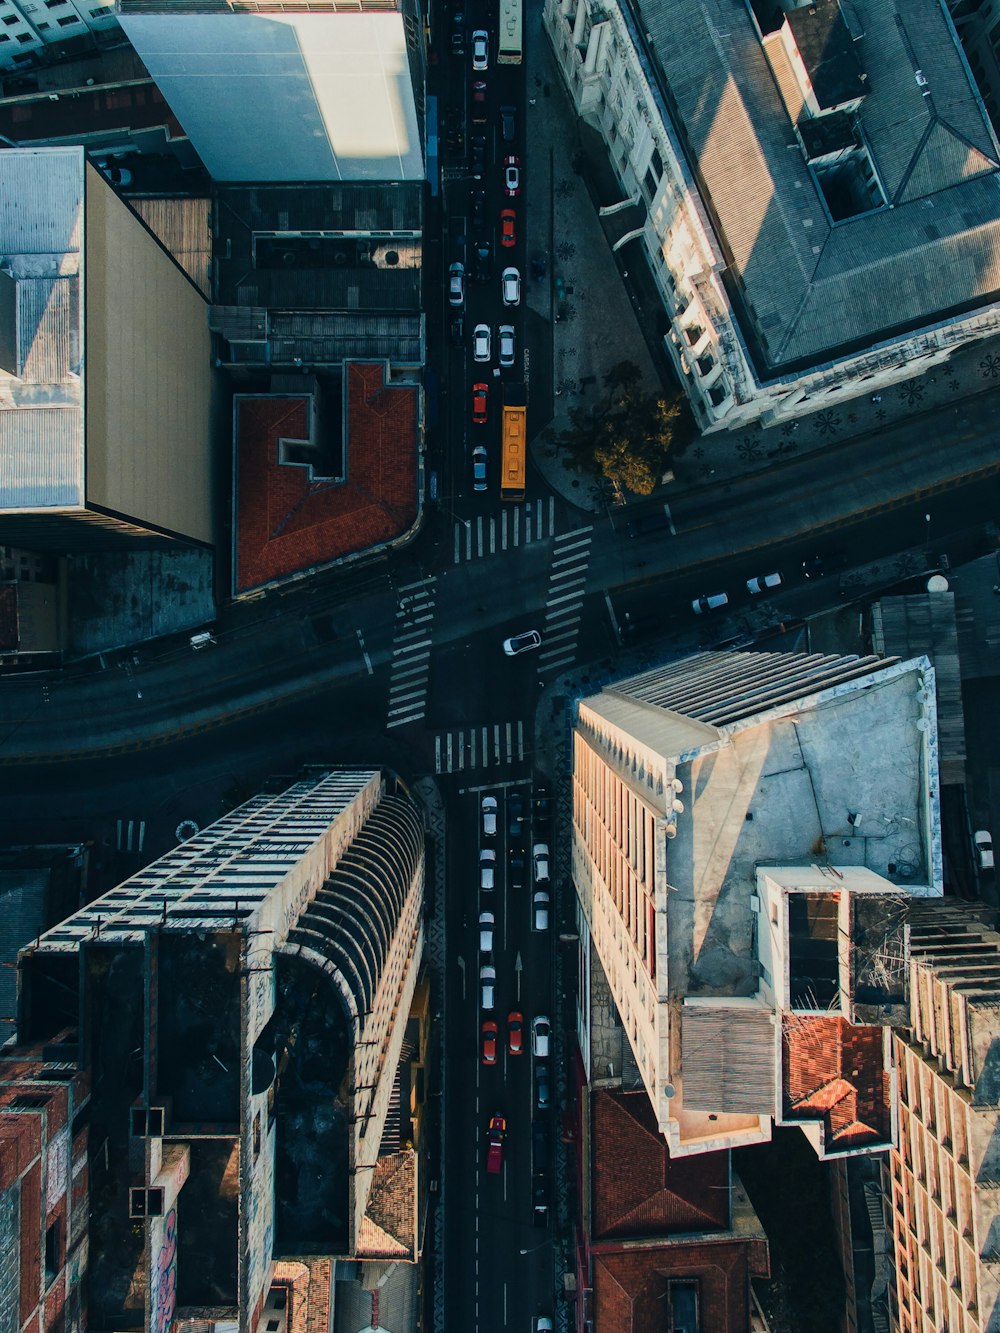 Veduta aerea dell'incrocio stradale circondato da grattacieli